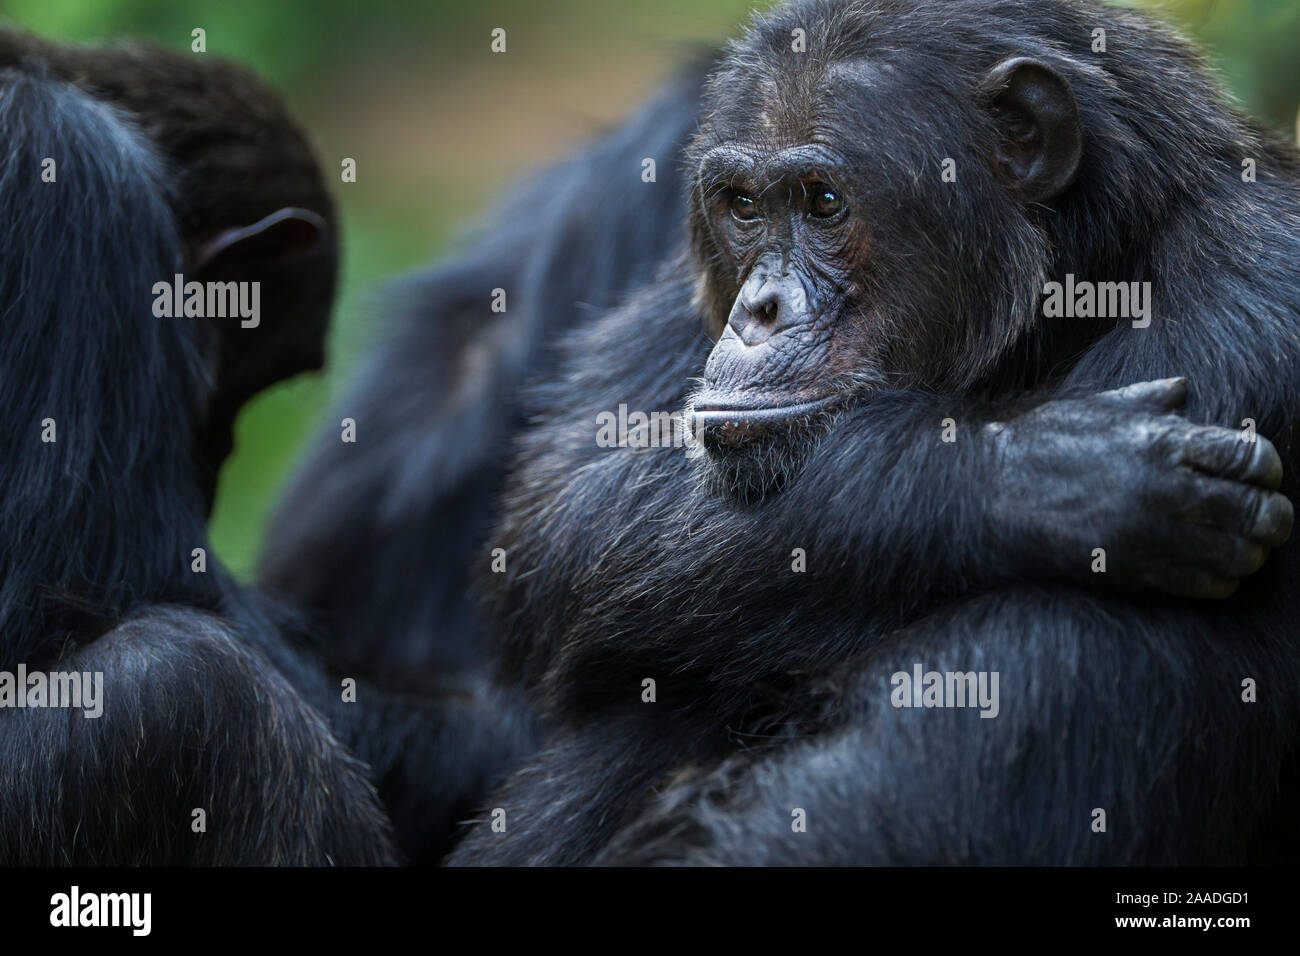 L'Est de chimpanzé (Pan troglodytes) schweinfurtheii mâle alpha 'Ferdinand' âgés de 20 ans portrait. Le Parc National de Gombe, en Tanzanie. Banque D'Images